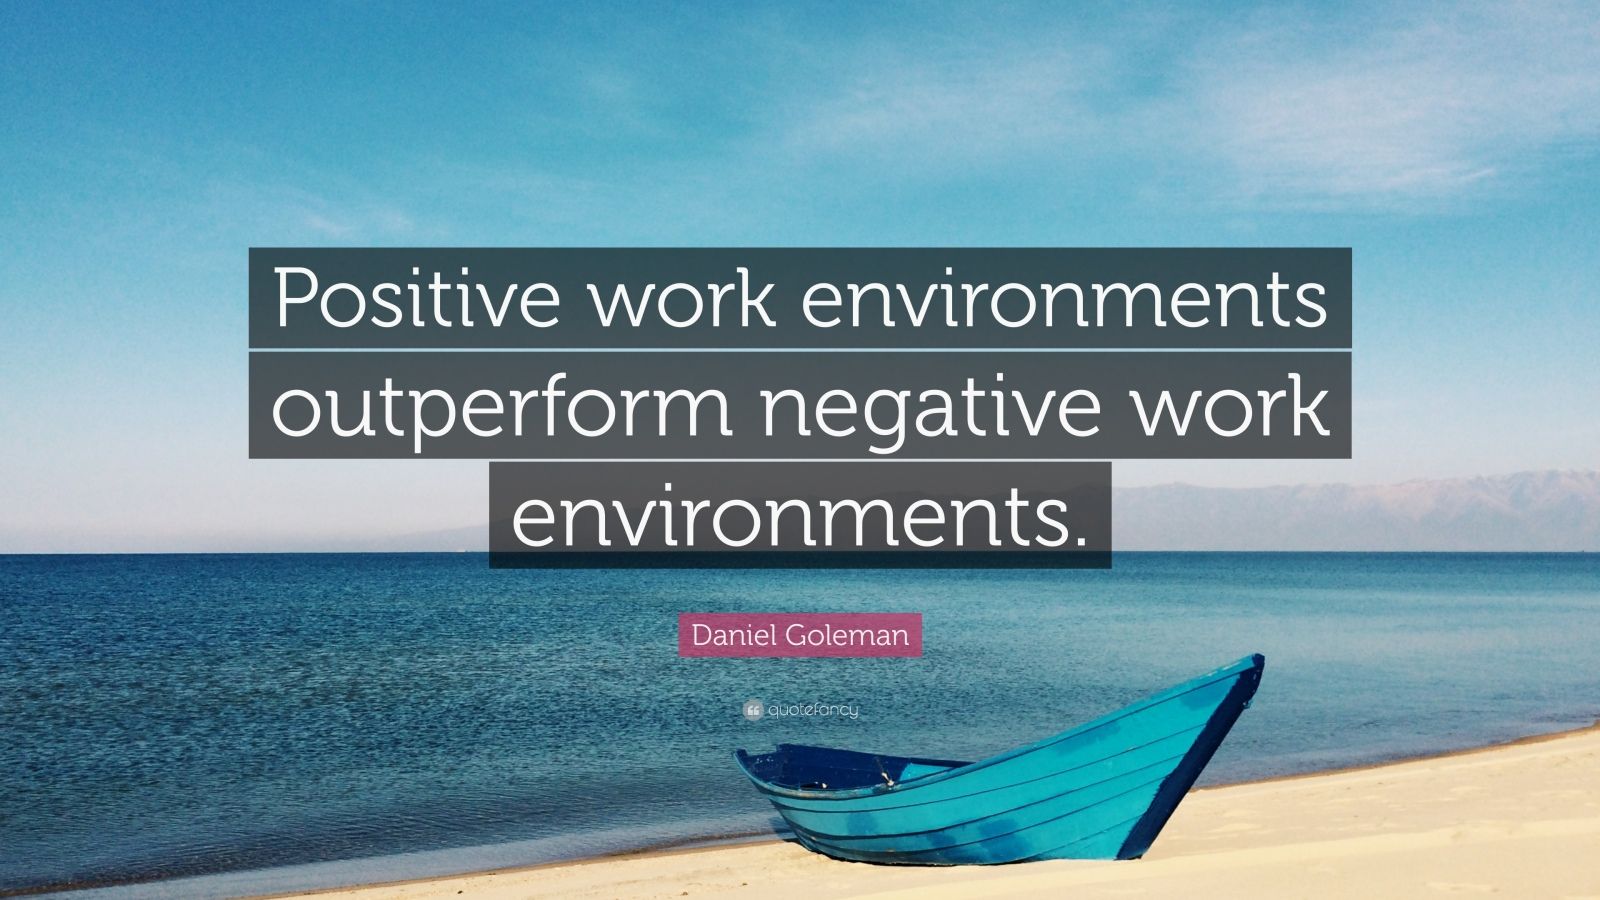 Daniel Goleman Quote: “Positive work environments outperform negative